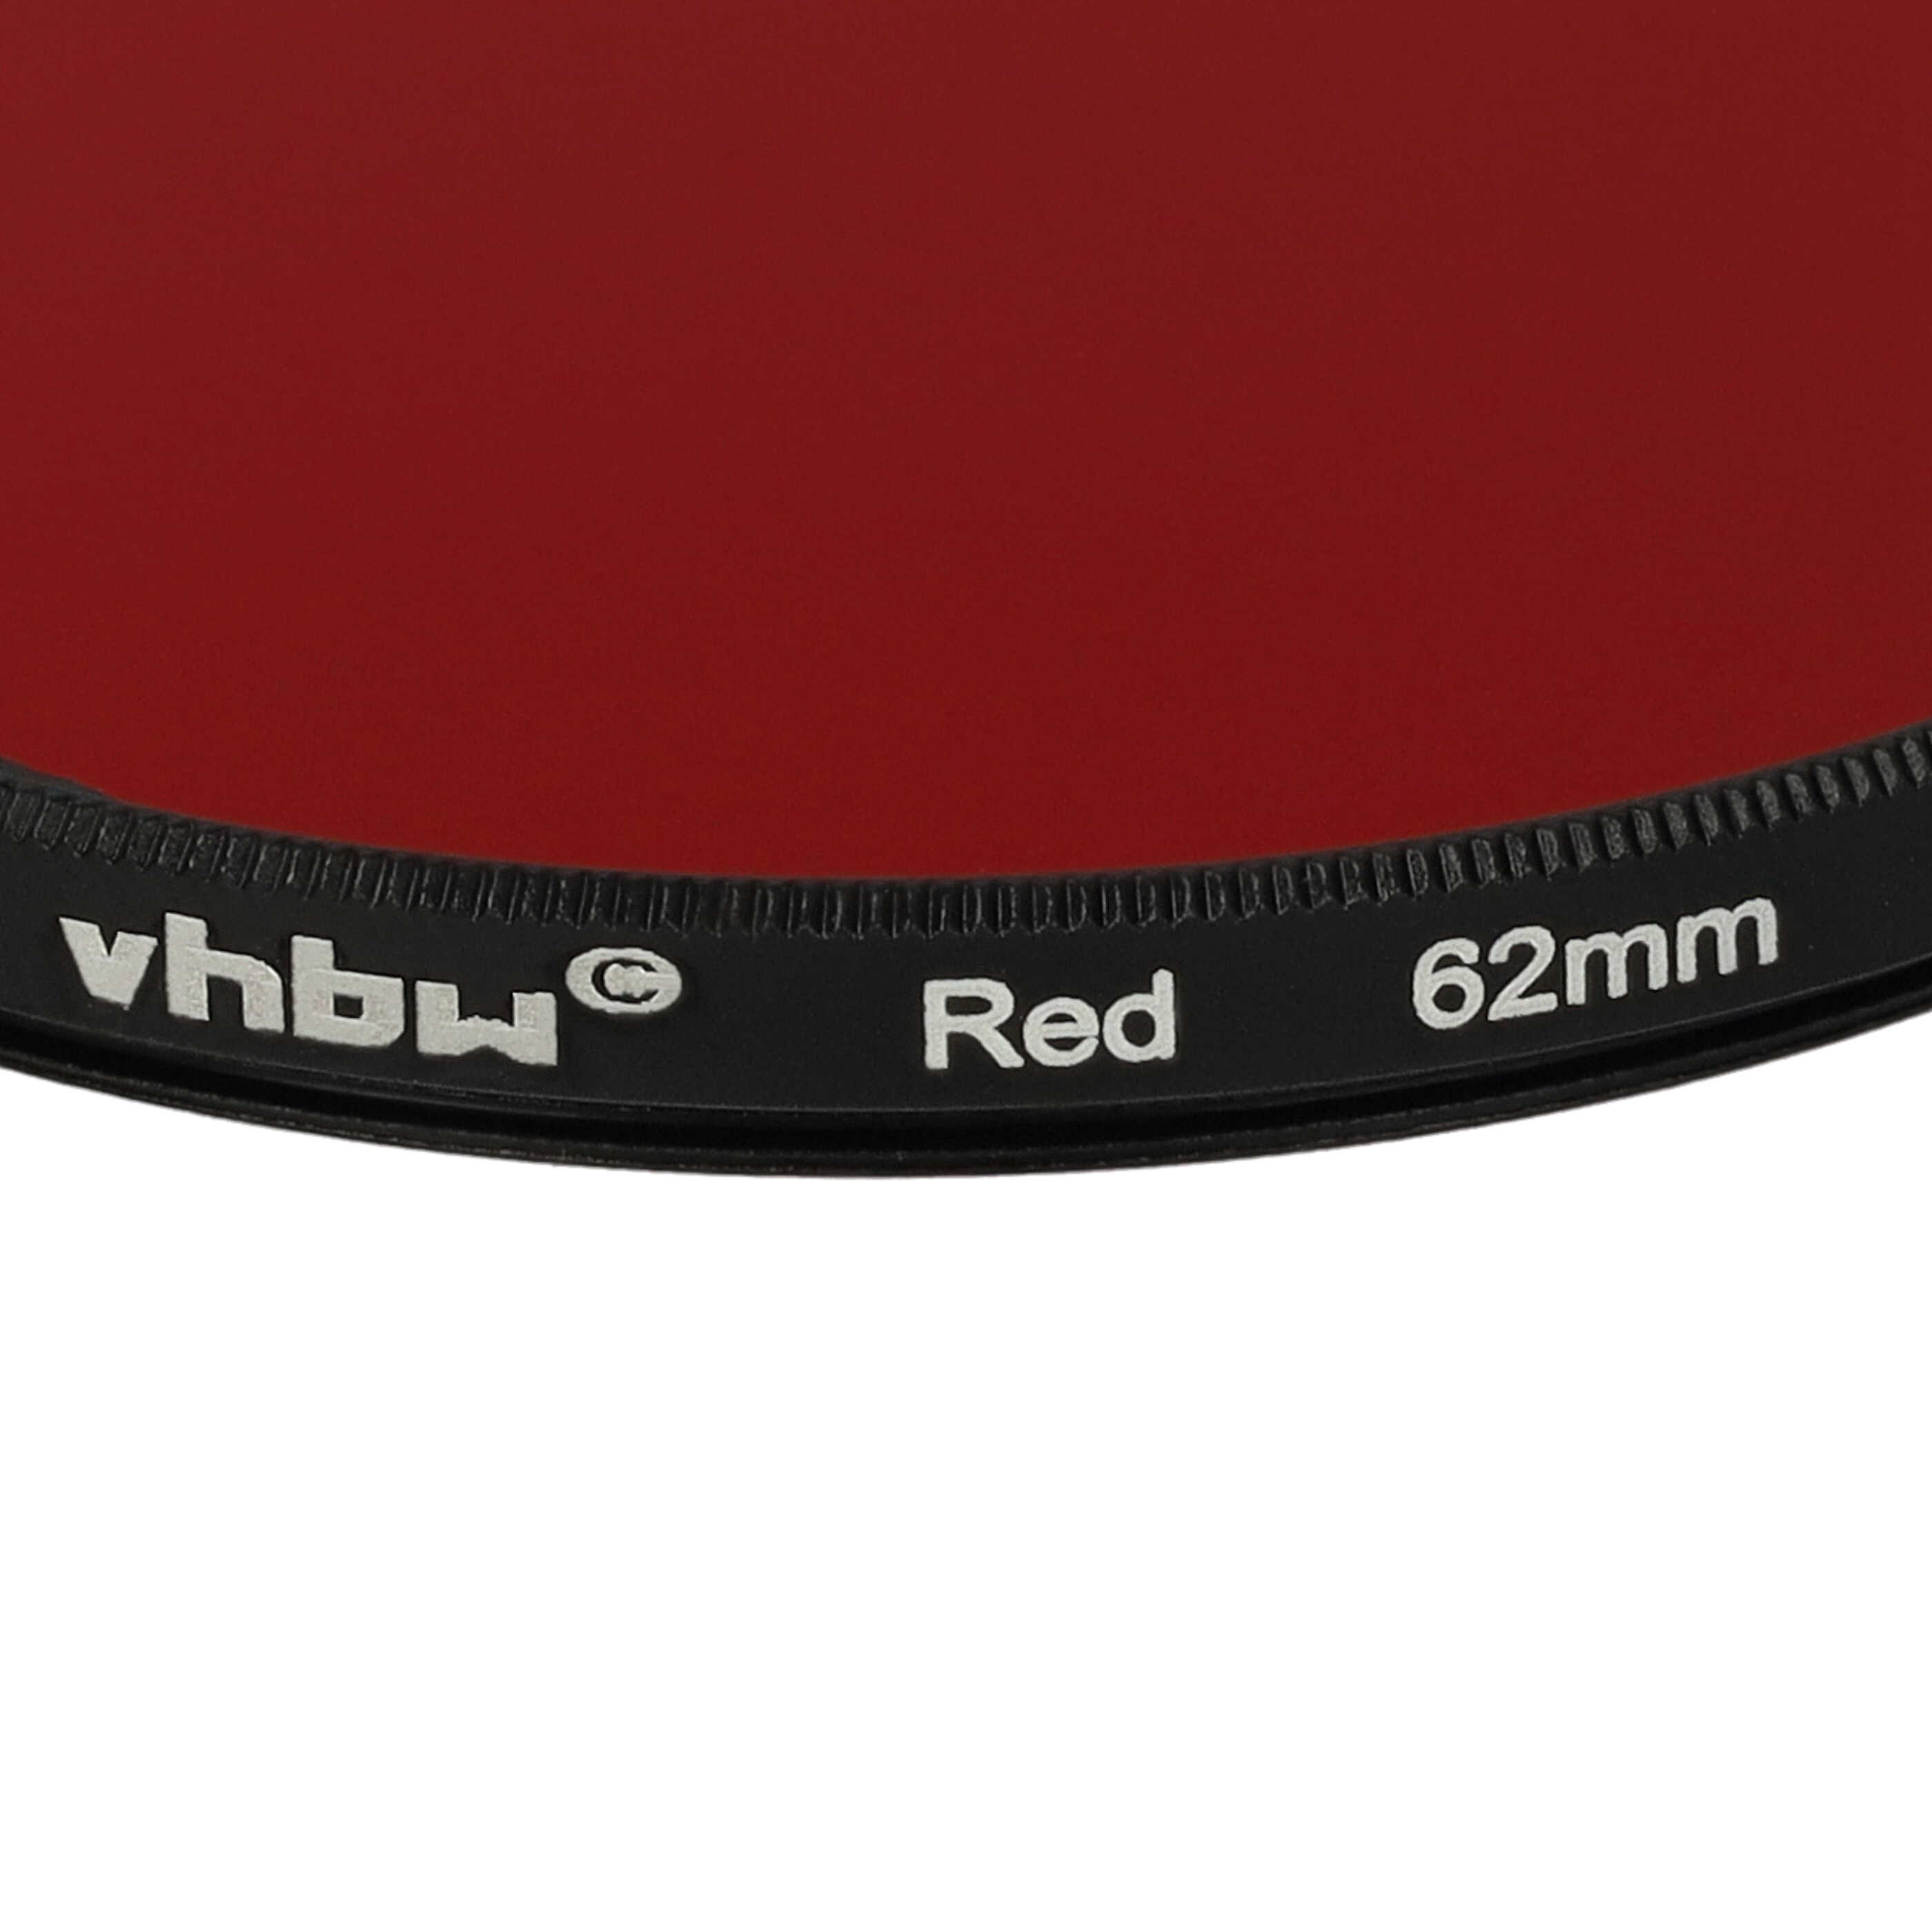 Filtre de couleur rouge pour objectifs d'appareils photo de 62 mm - Filtre rouge